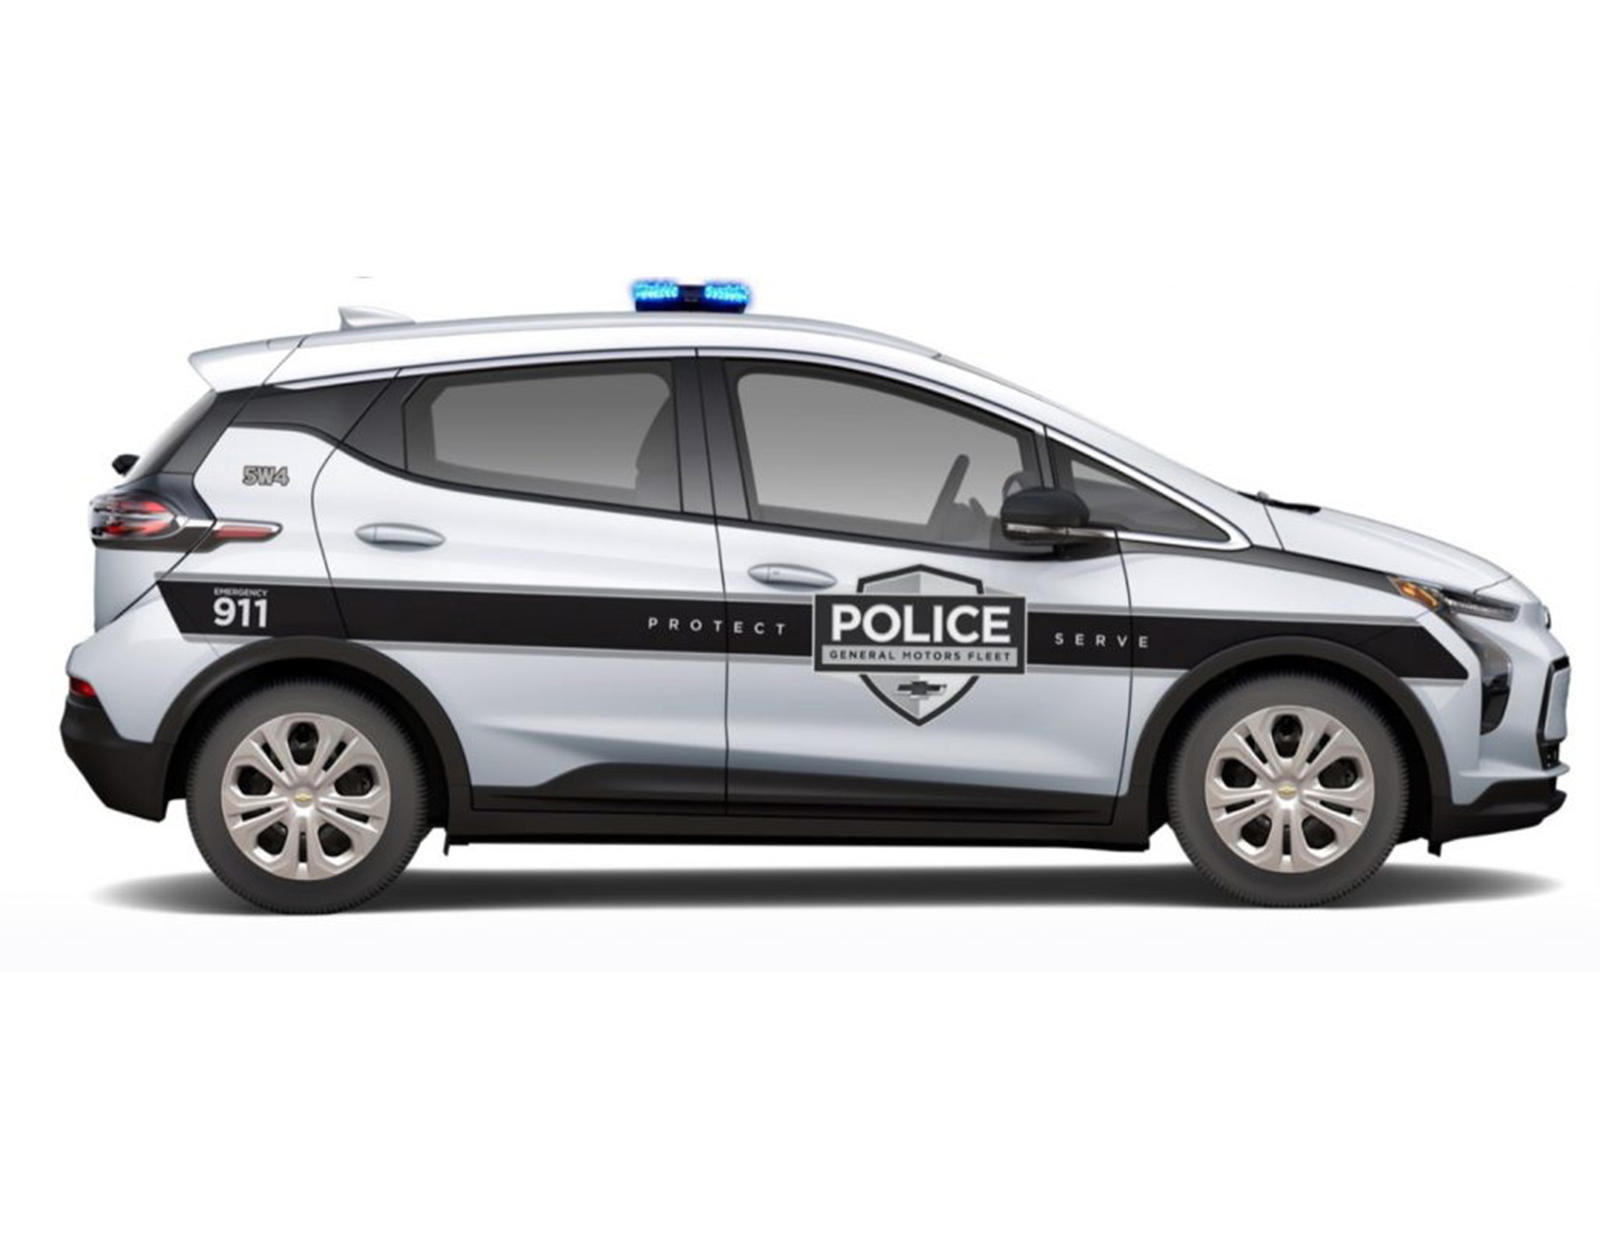 Учитывая, что оба электромобиля развивают ничтожную максимальную скорость всего 150 км/ч, эти электромобили для правоохранительных органов не станут особенно полезными высокоскоростными полицейскими машинами для преследования.